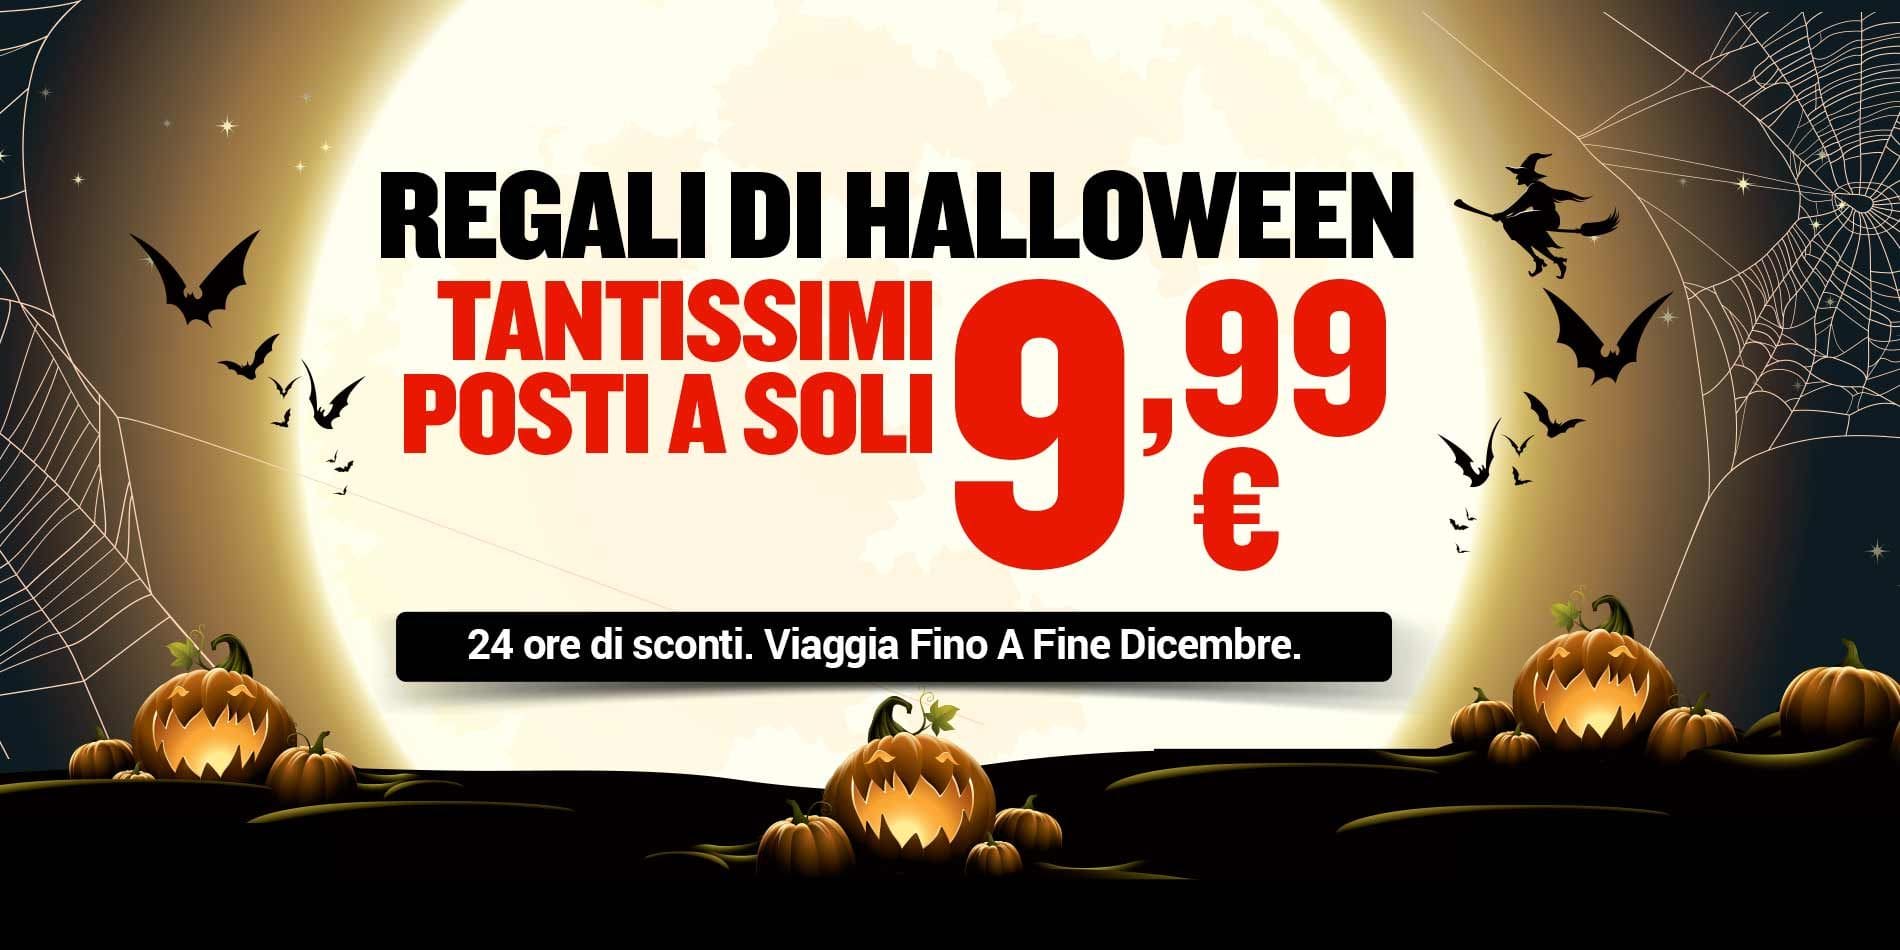 Ryanair Lancia Una Promozione Fantasmagorica Per Halloween! Tantissimi Posti A Soli € 9,99